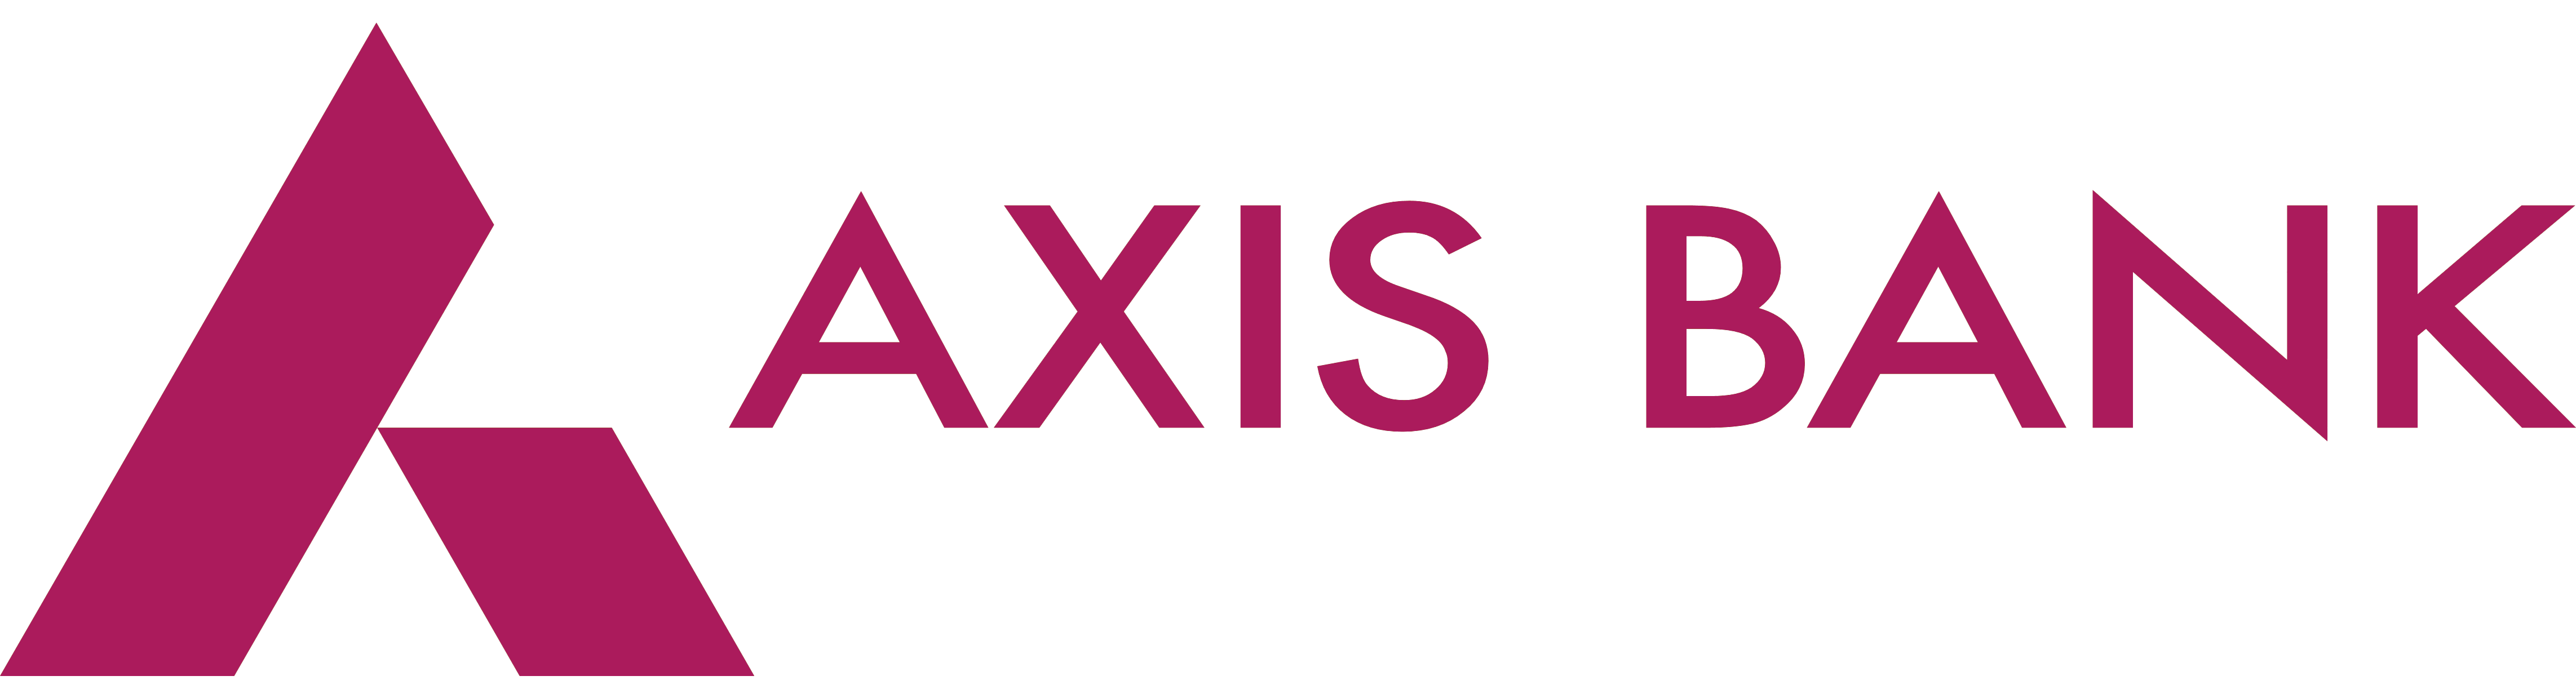 Axis Logo - Axis Bank – Logos Download